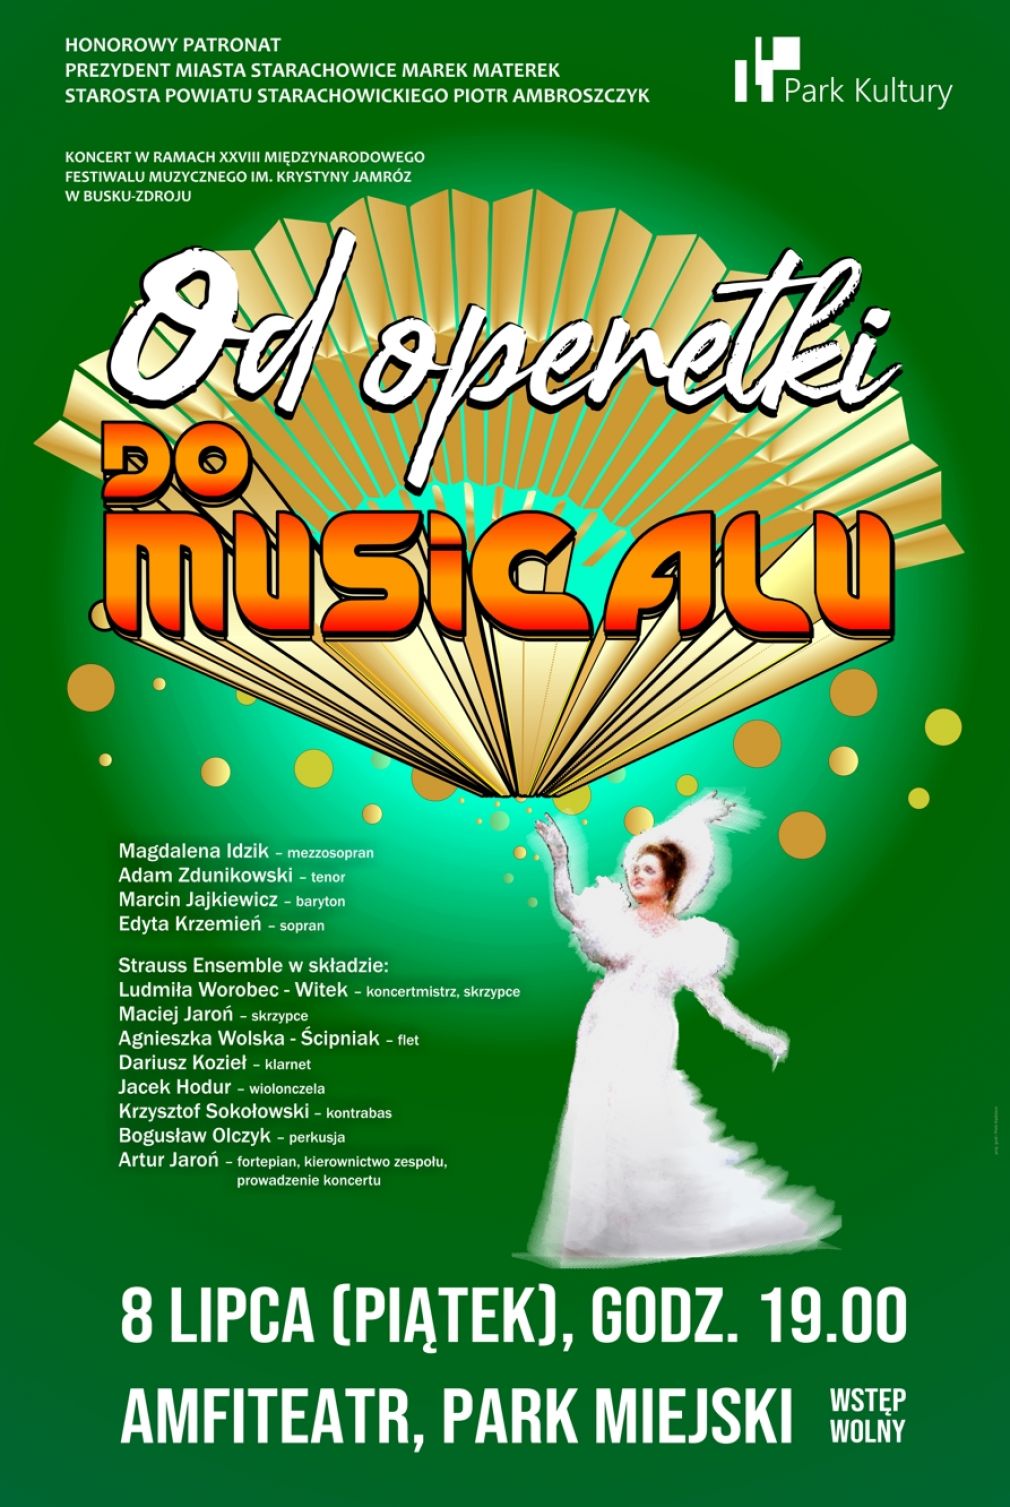 Koncert „Od operetki do musicalu” w wykonaniu wybitnych solistów oraz zespołu Strauss Ensemble